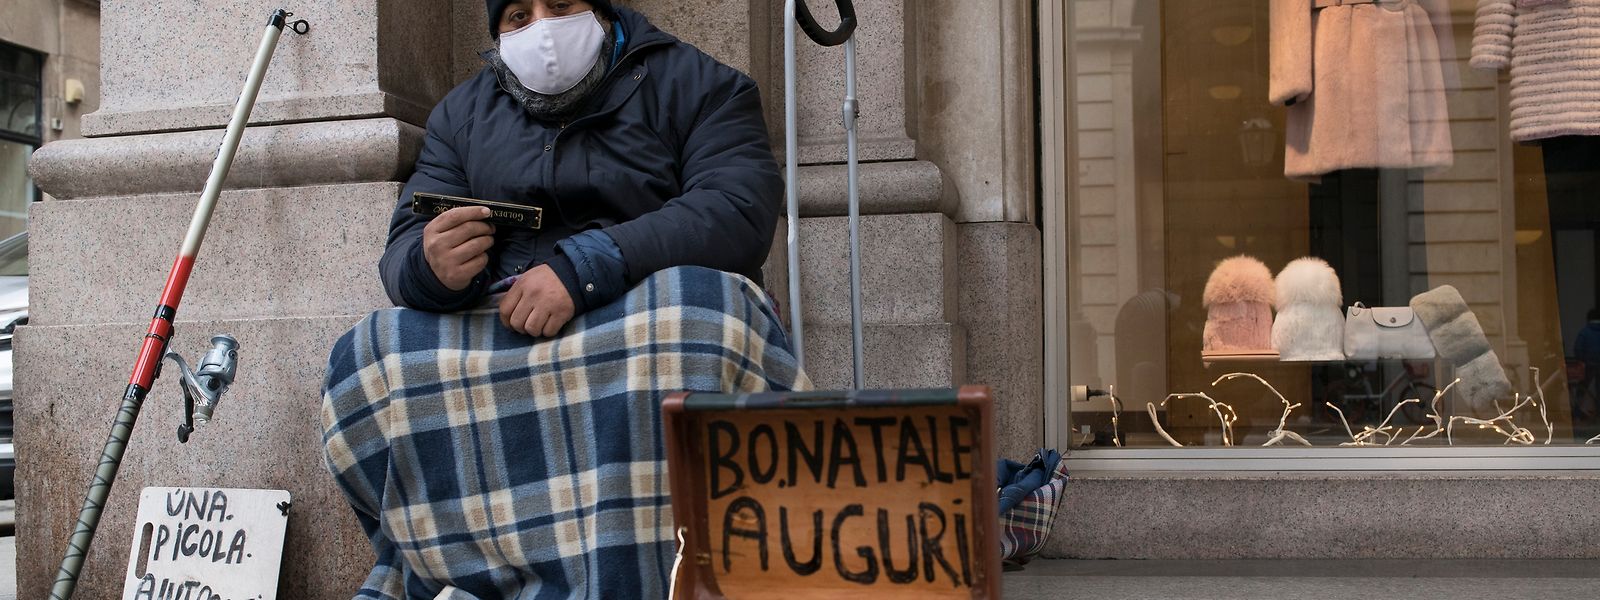 Ein Obdachloser in Turin bittet mit einer Krippe und einem Schild, das frohe Feiertage wünscht, um Almosen.